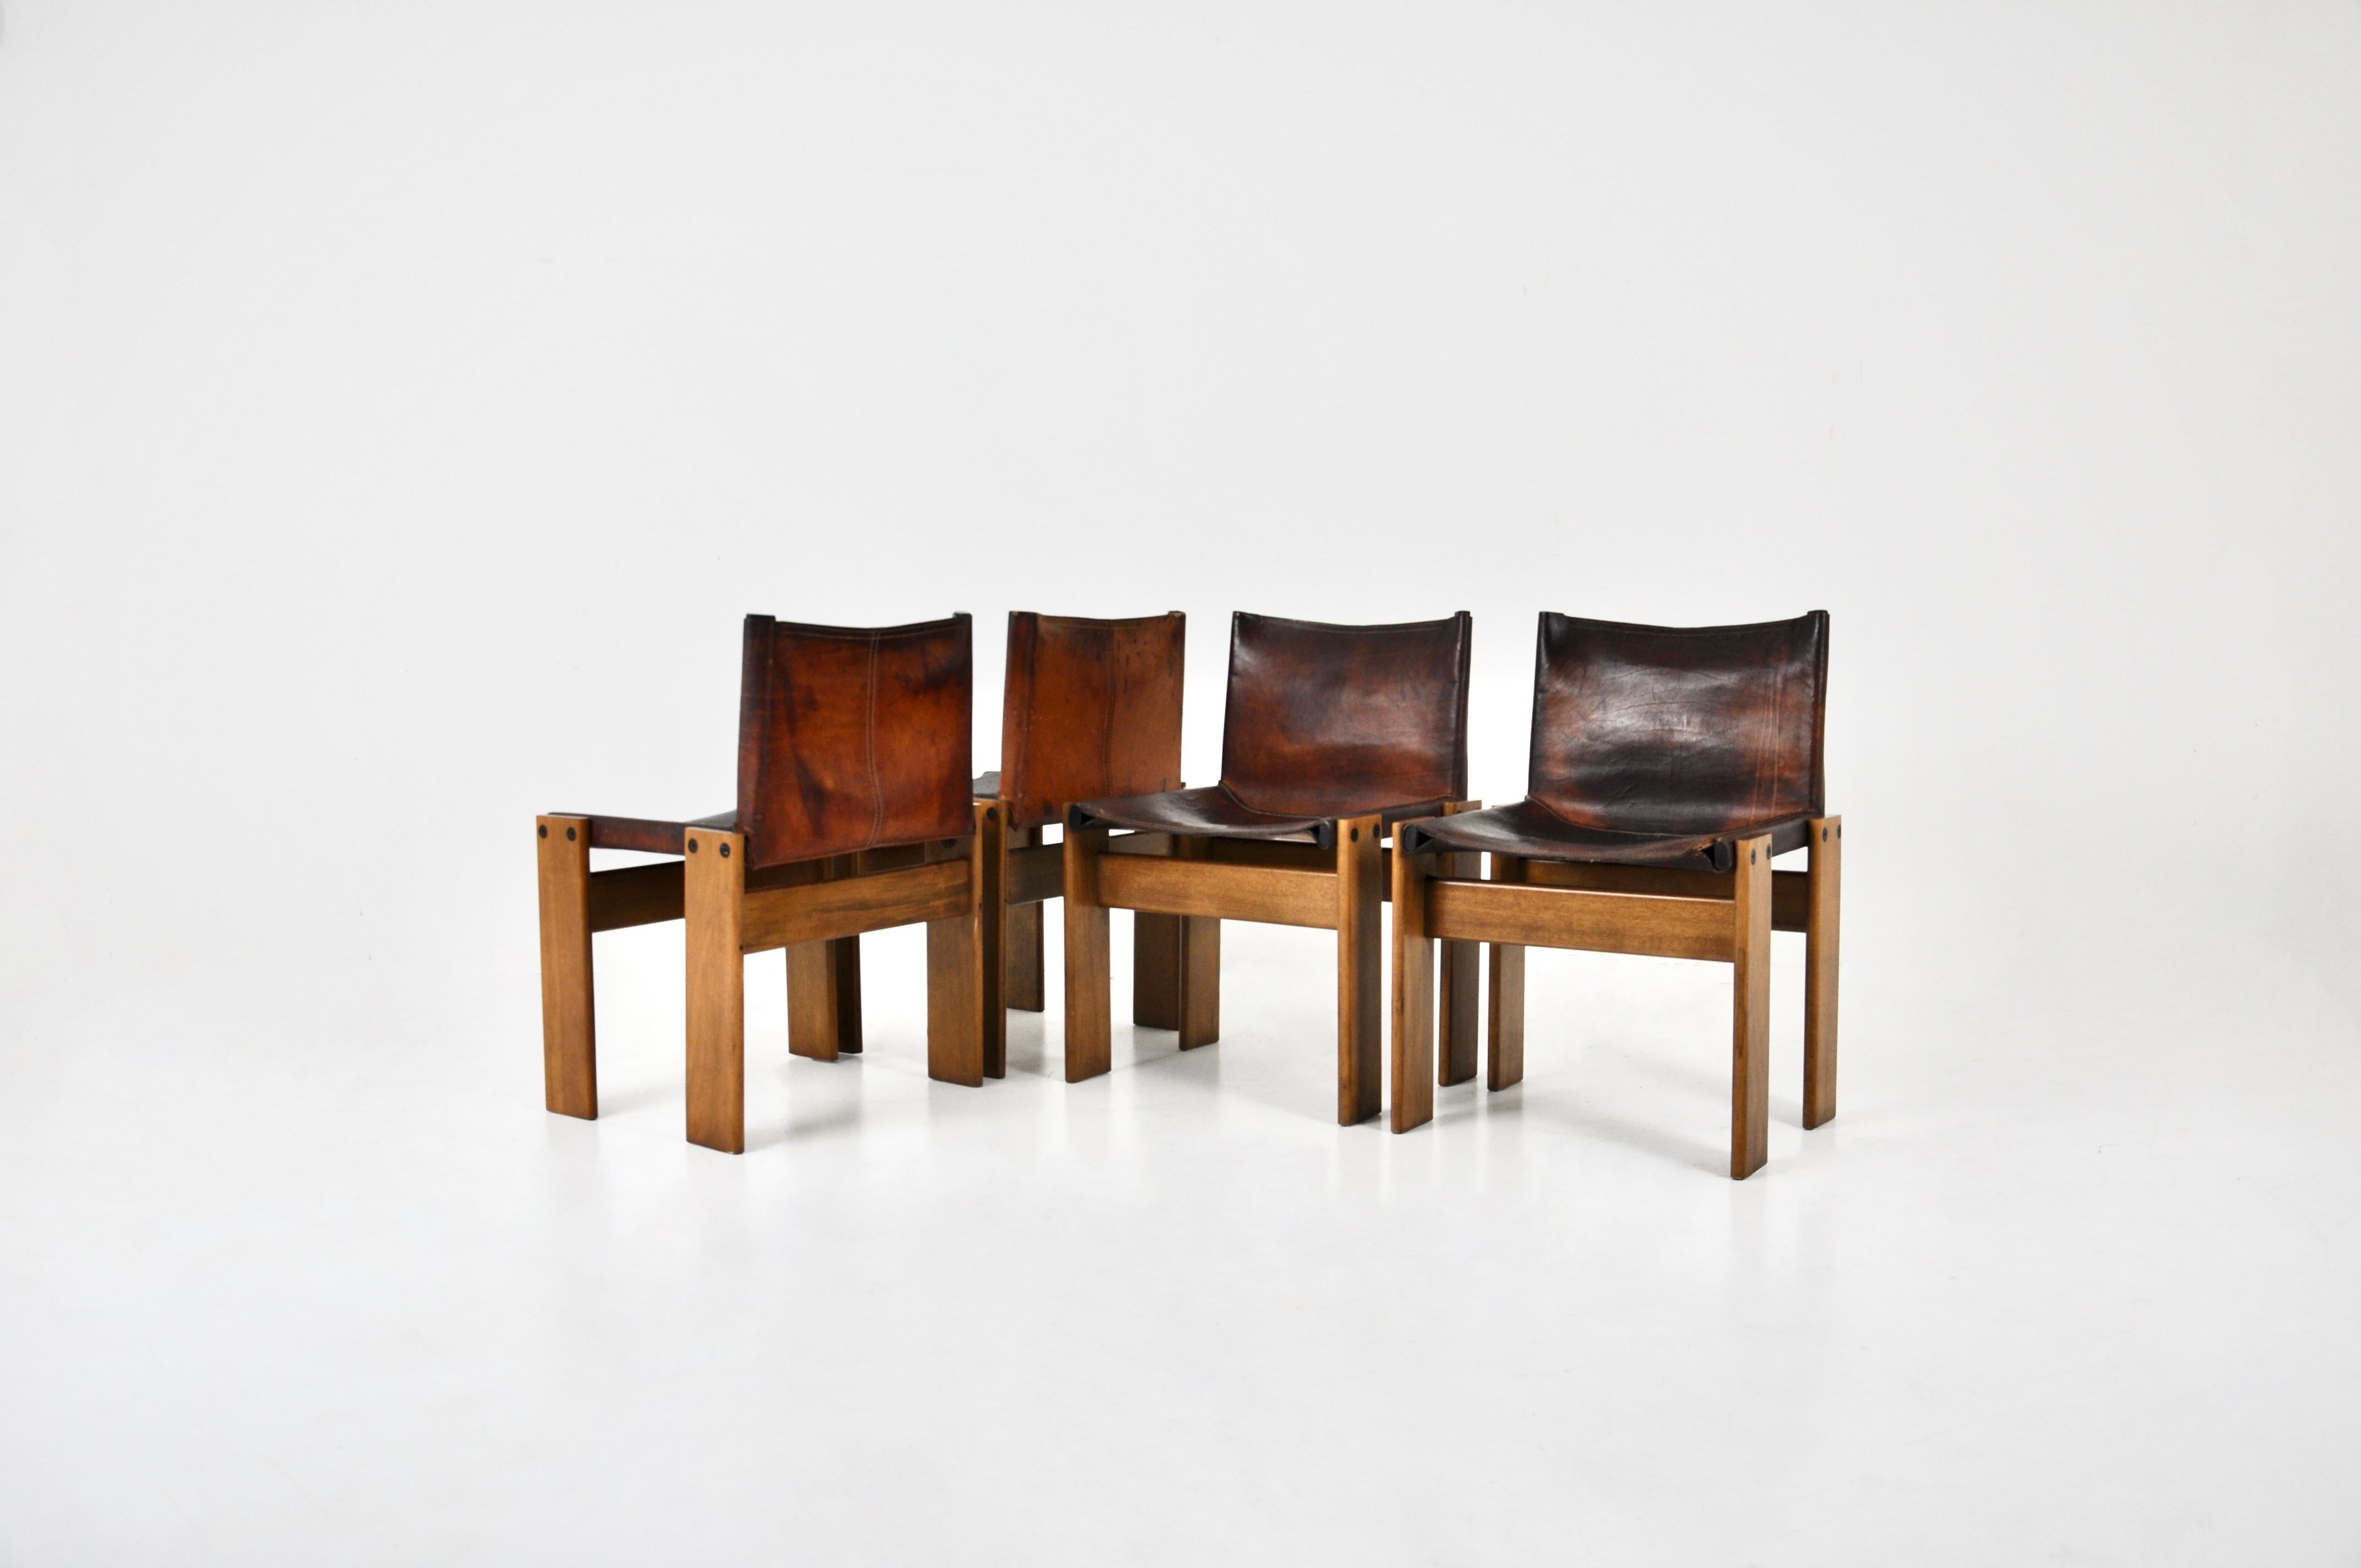 Set aus 4 Stühlen aus braunem Leder und Holz, entworfen von Afra & Tobia Scarpa. Modell: Mönch. Sitzhöhe: 43cm Zeit- und altersbedingte Abnutzung der Stühle.
 